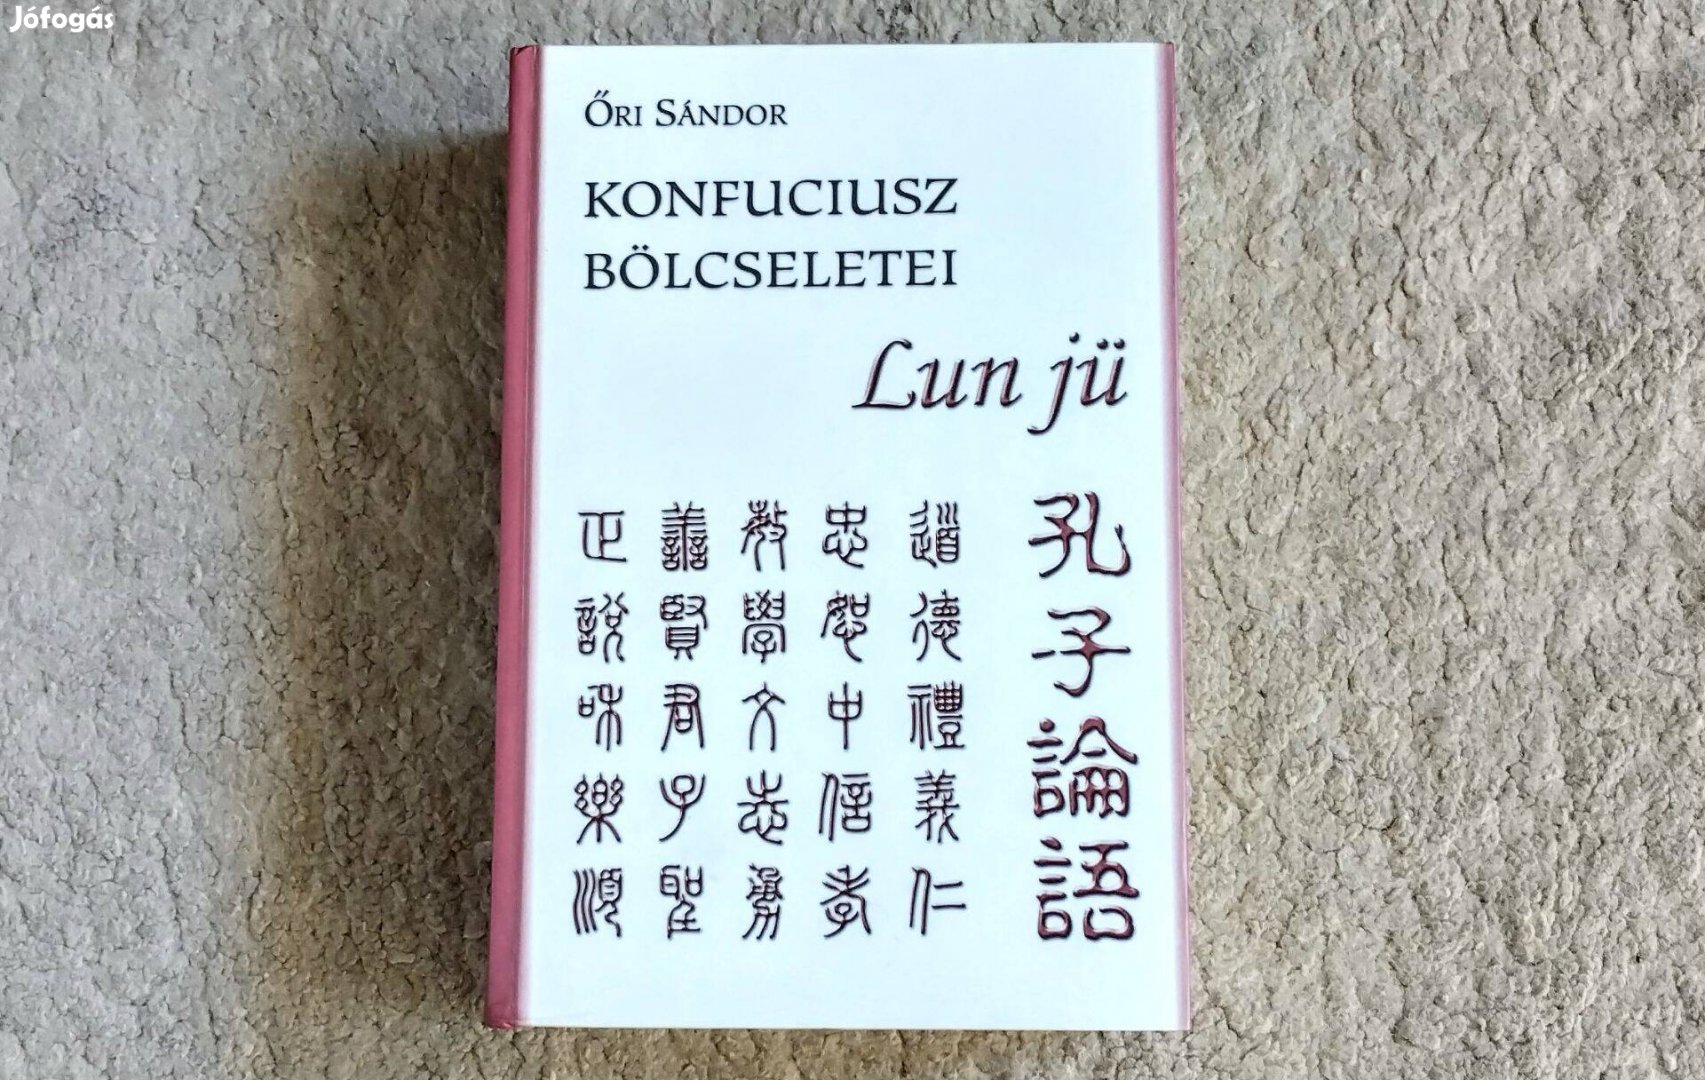 Konfuciusz bölcseletei - Lun jü - Őri Sándor